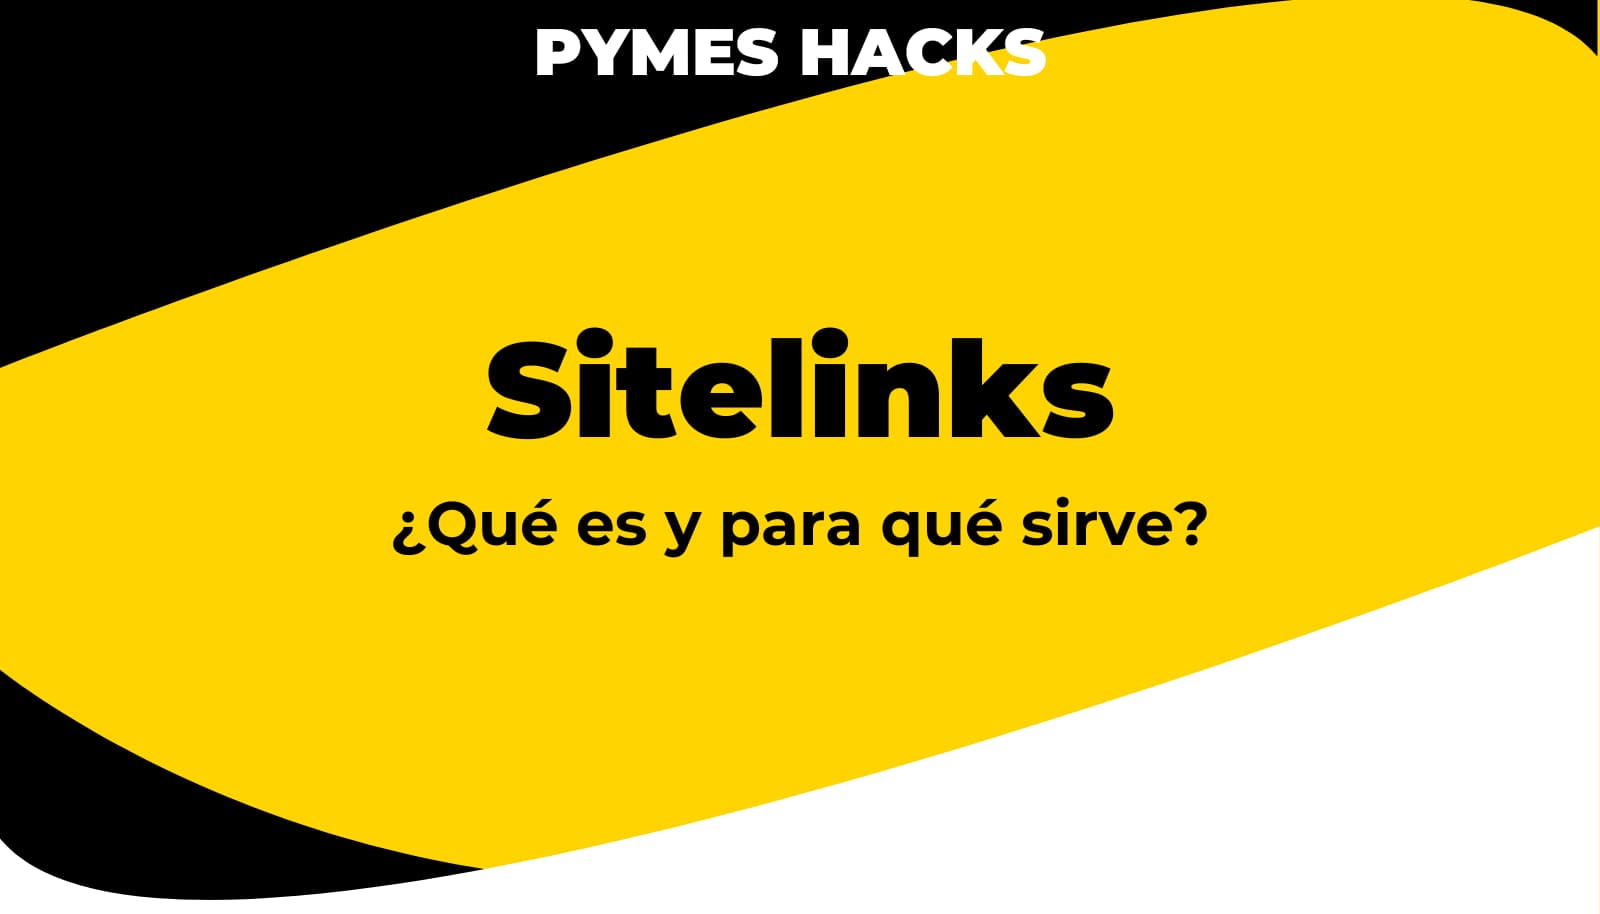 Sitelinks: Definición, tipos, beneficios y cómo conseguirlos